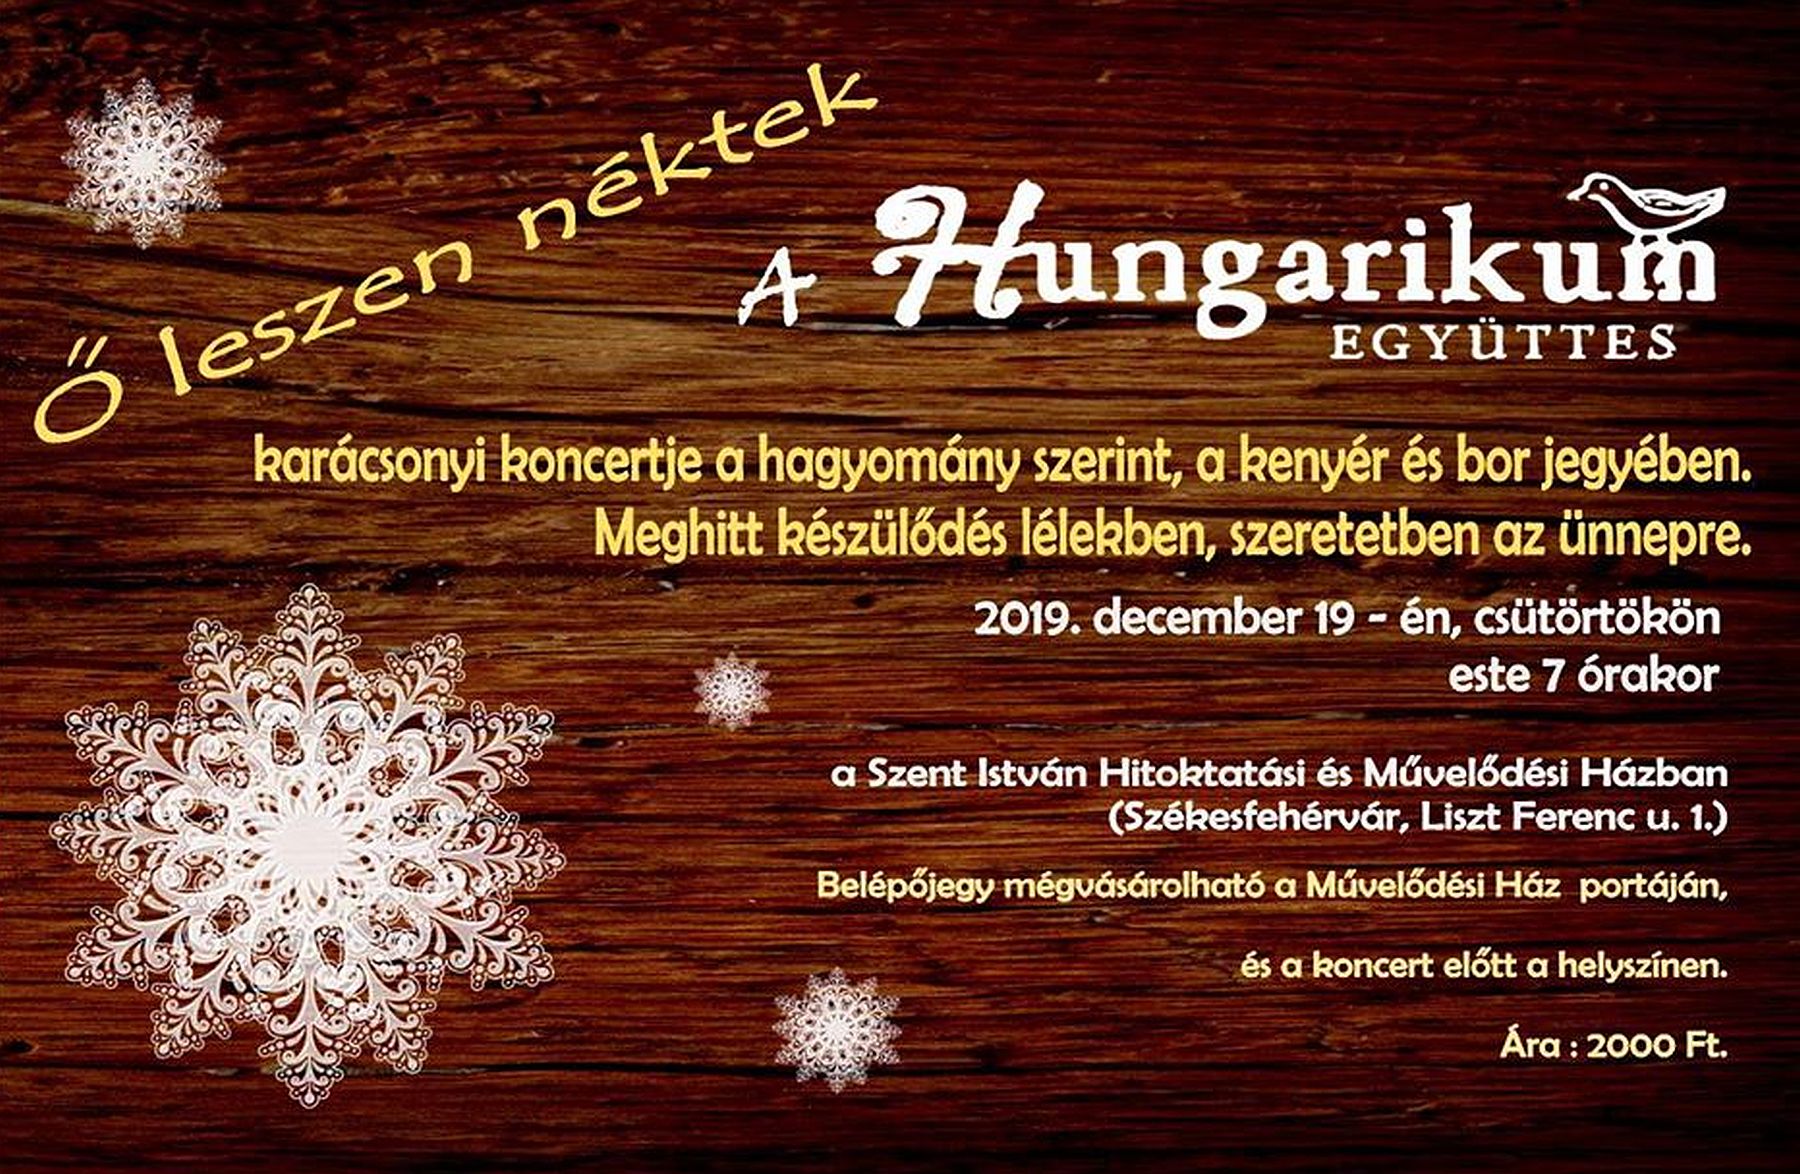 A Hungarikum együttes karácsonyi koncertje a Szent István Művelődési Házban